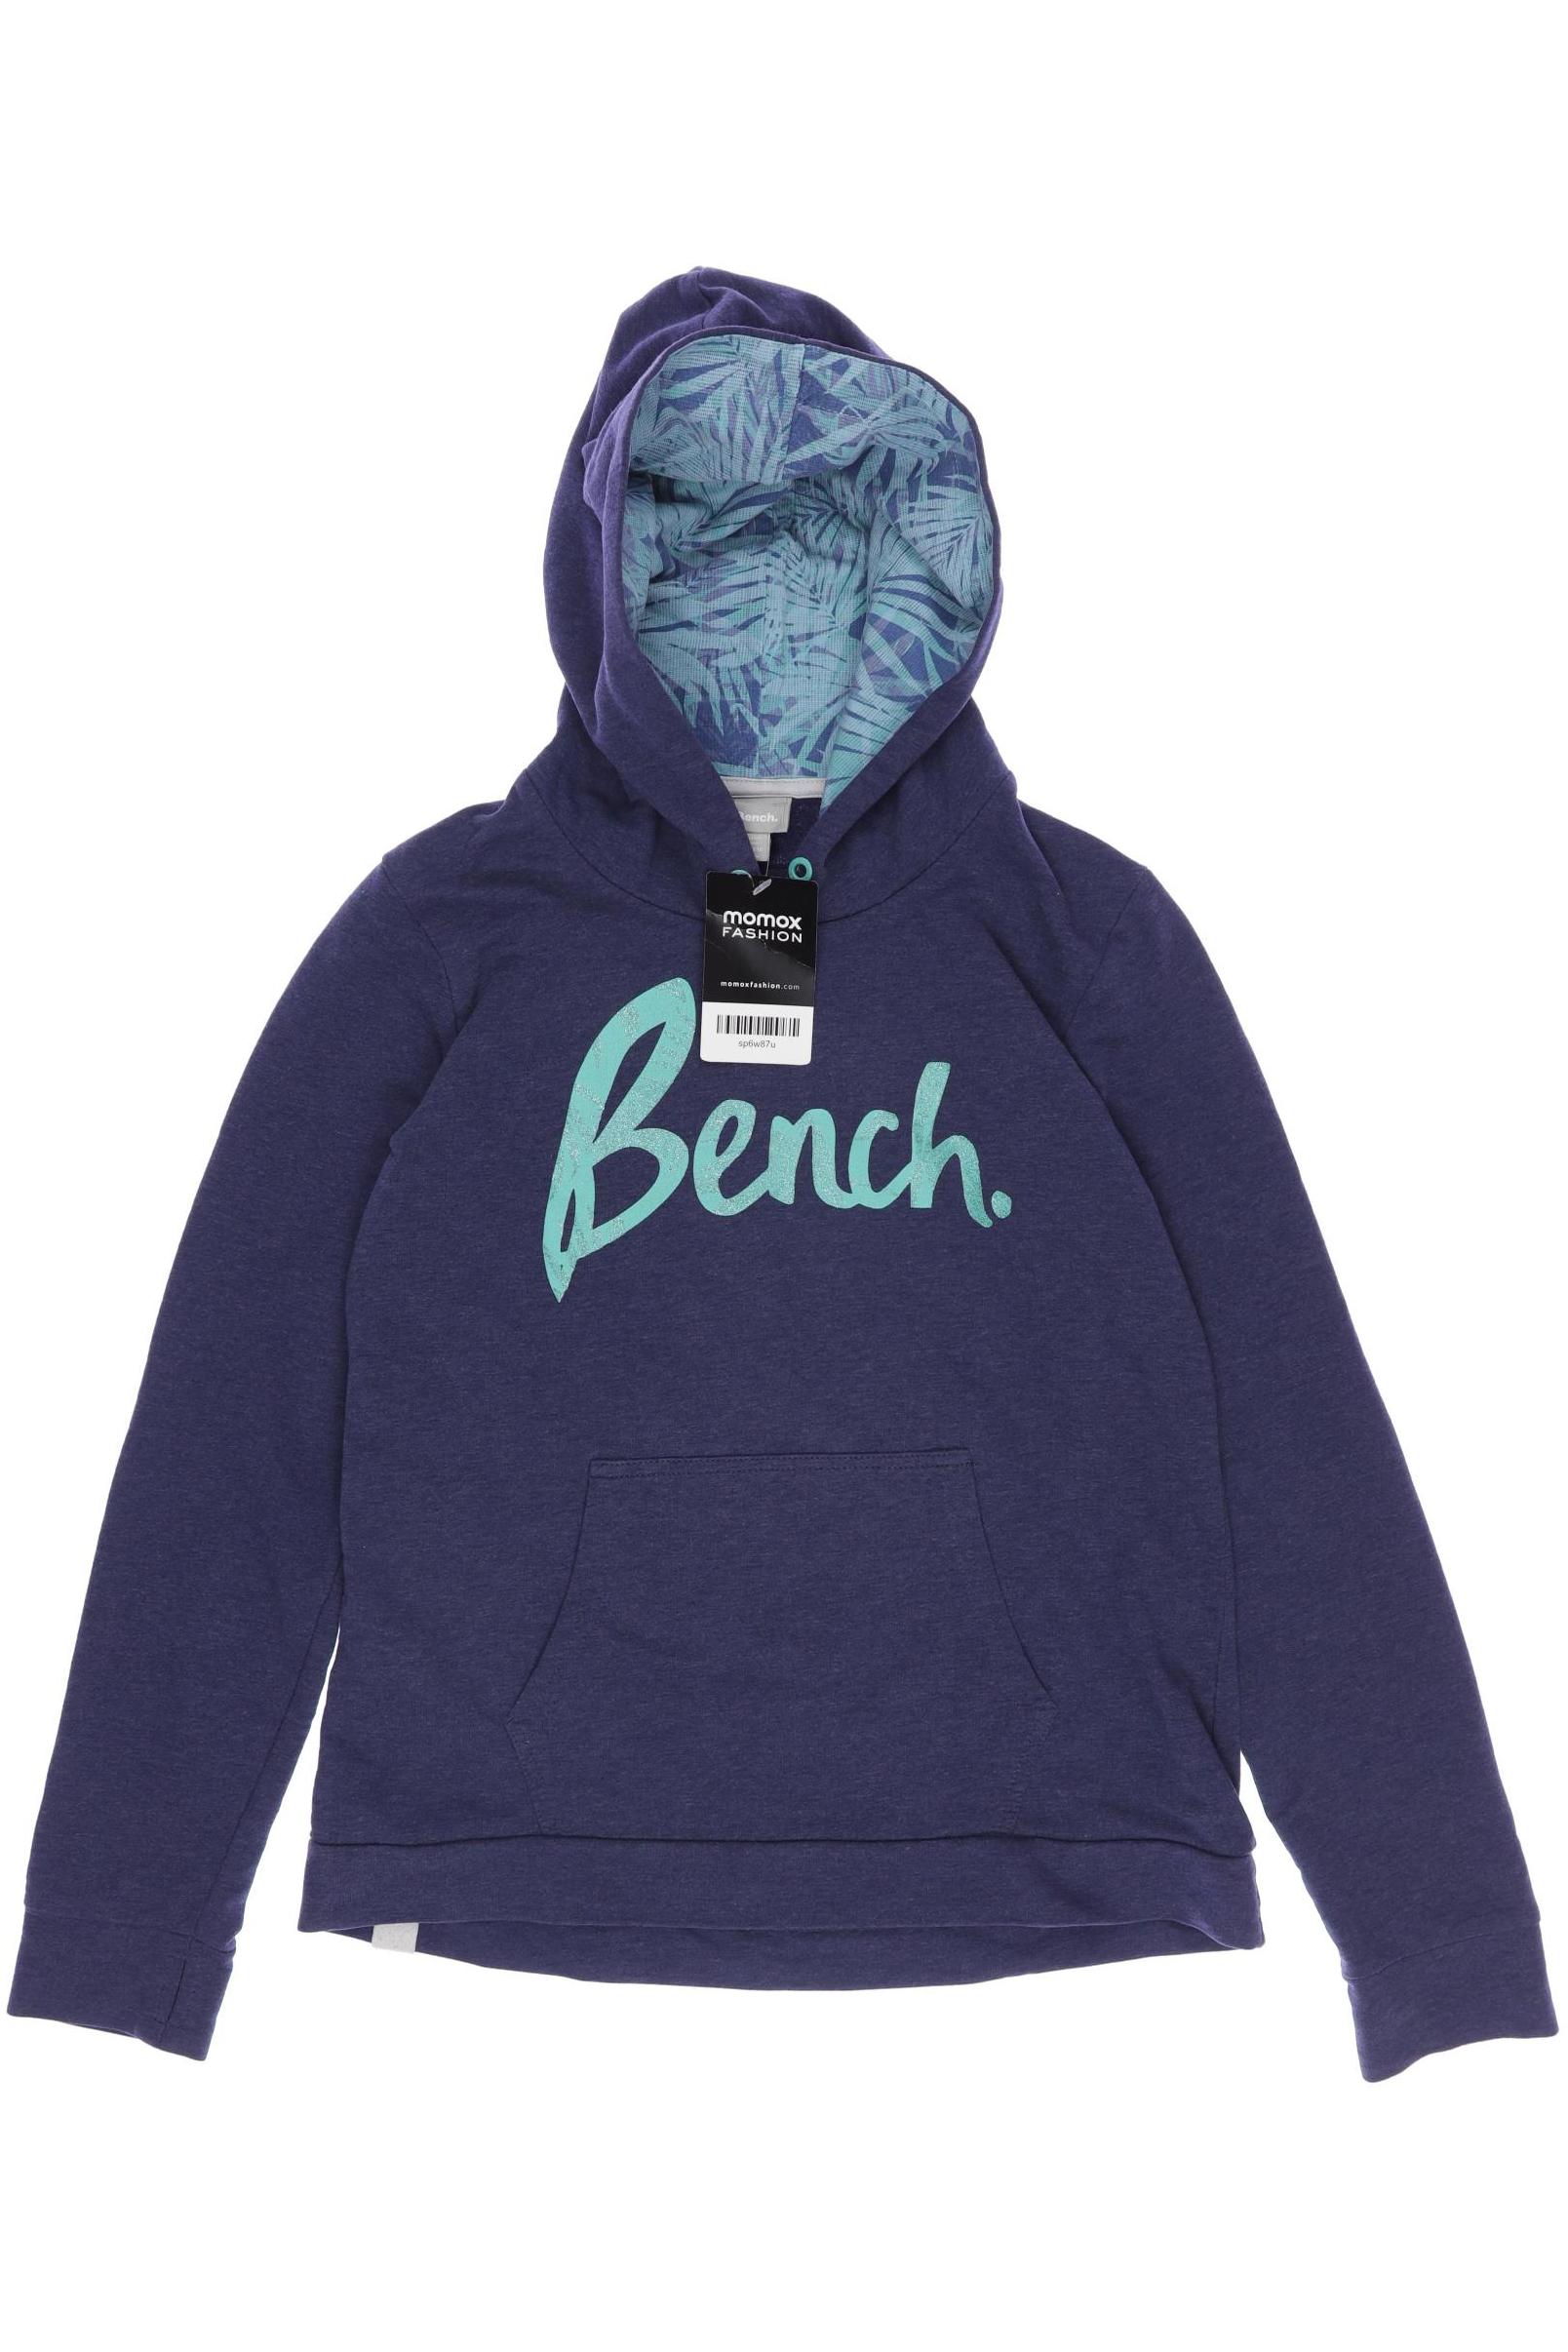 Bench. Mädchen Hoodies & Sweater, marineblau von Bench.